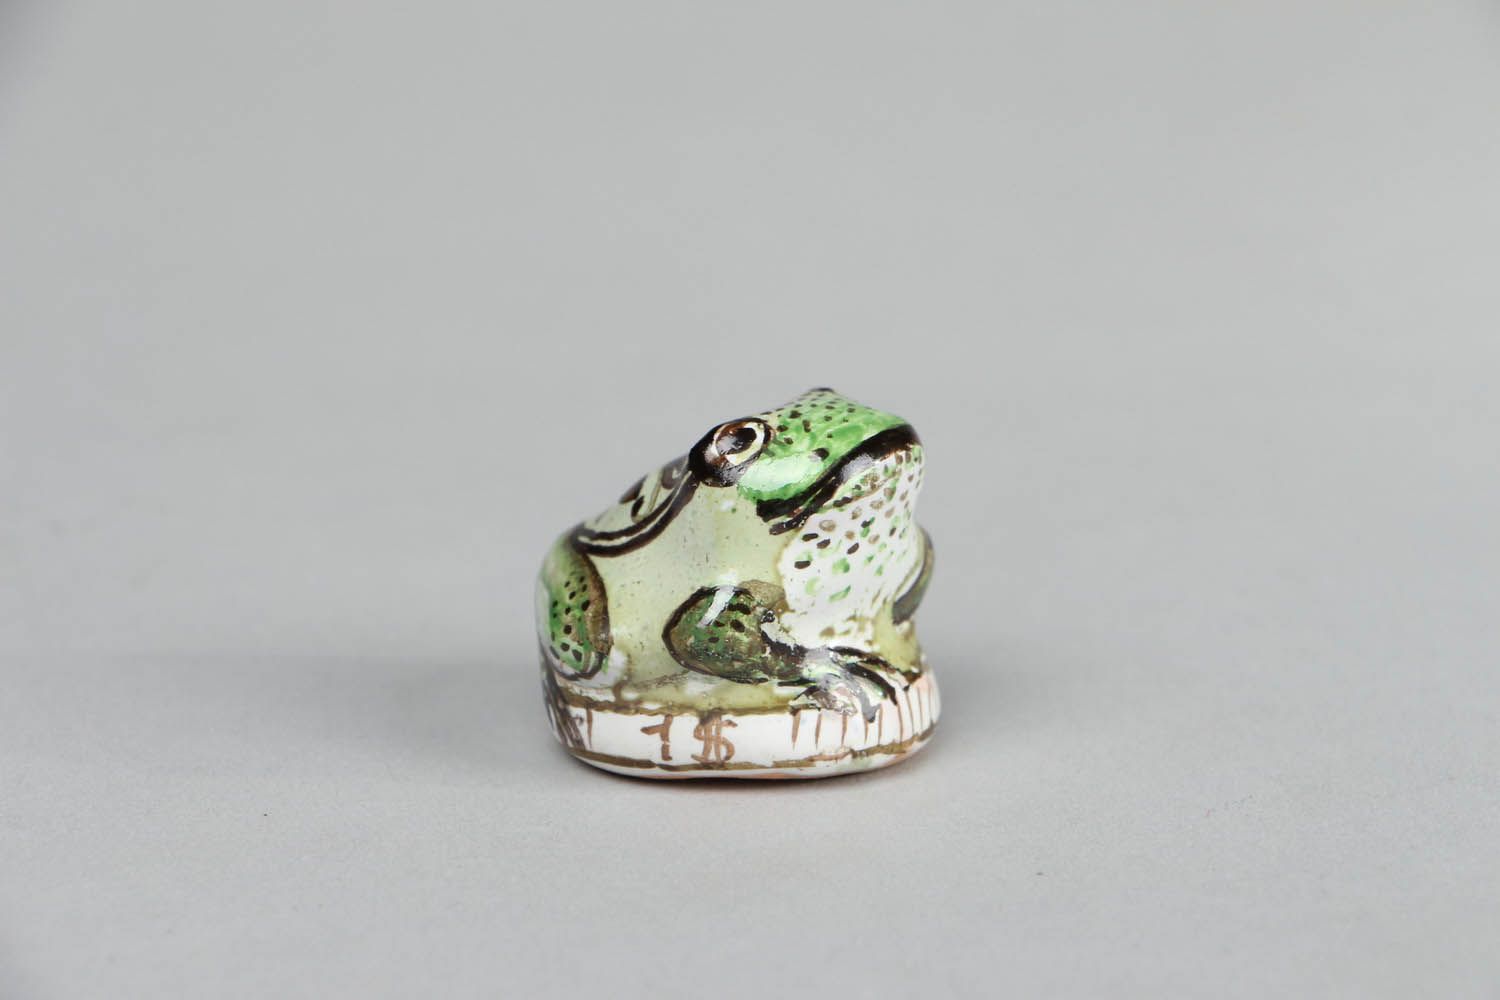 Ceramic frog figurine photo 1